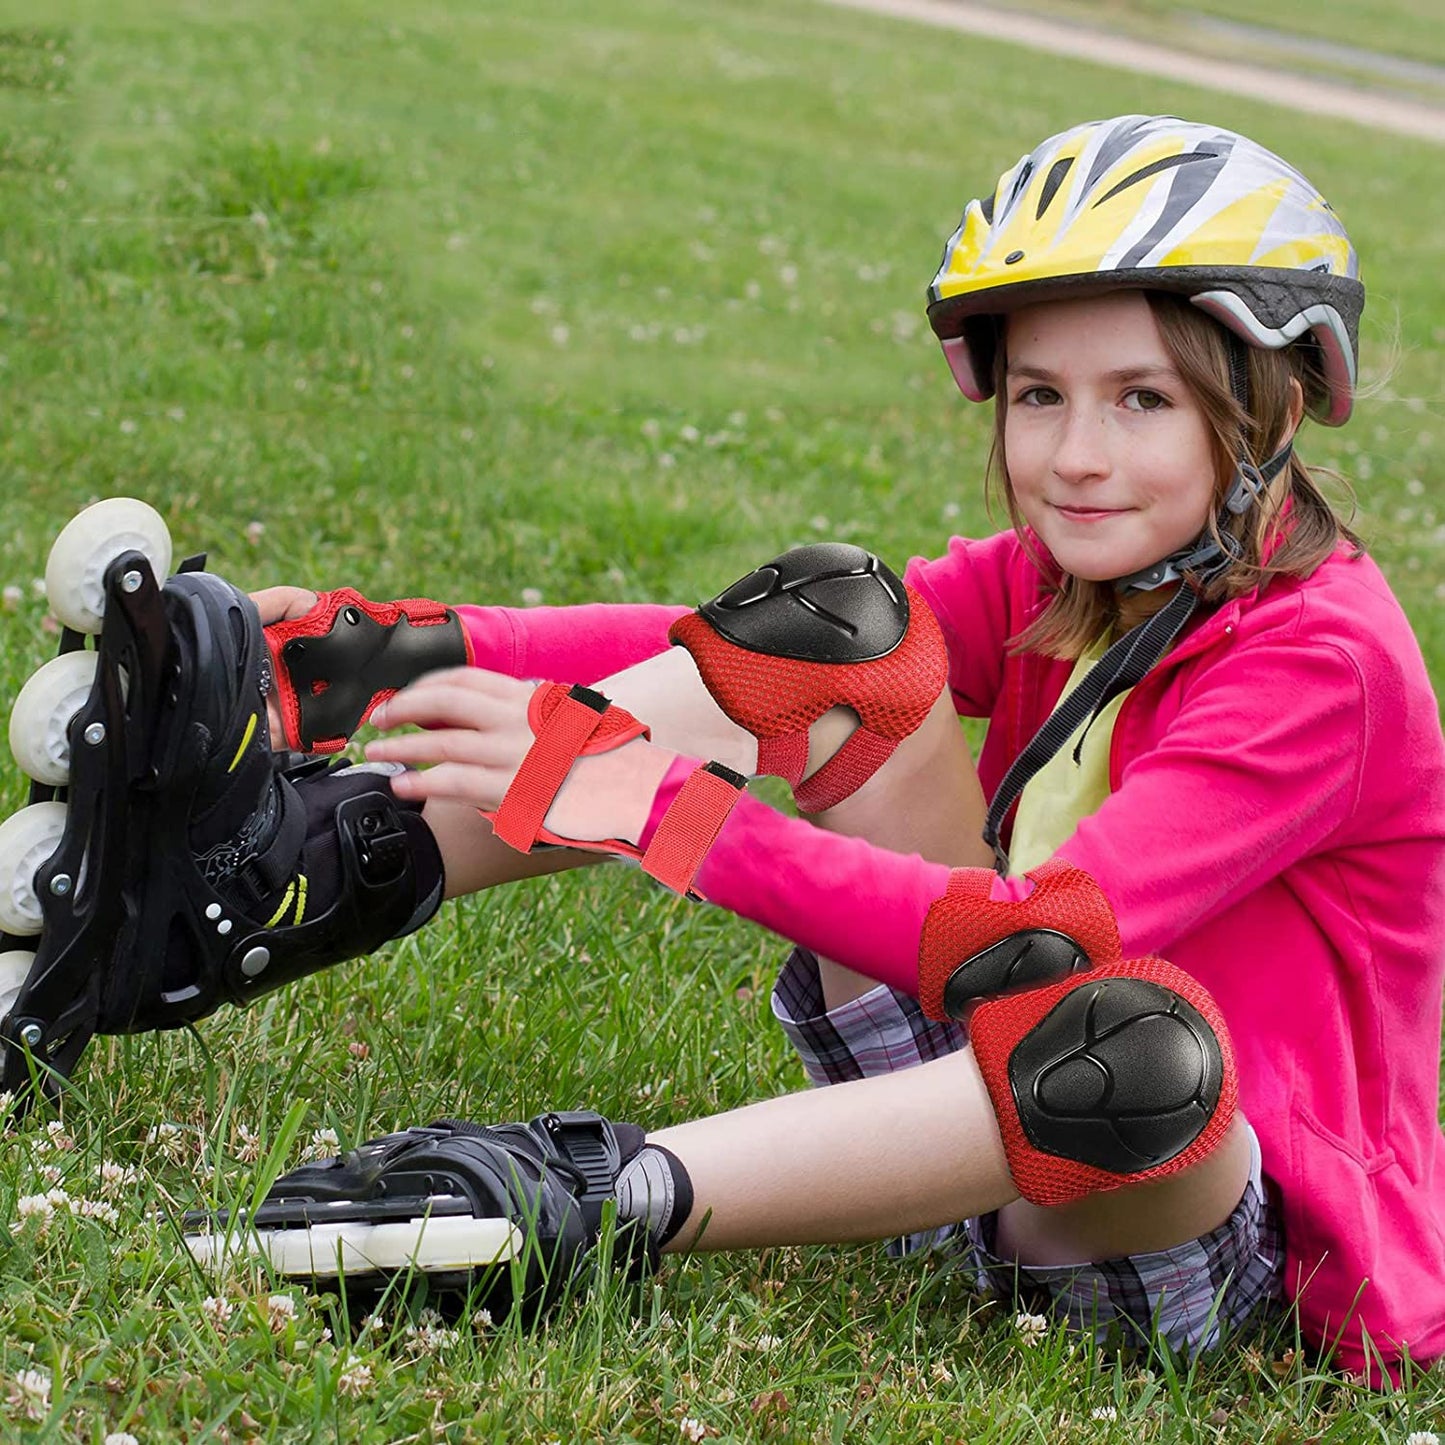 مجموعة حماية الركبة و الكوع و المعصم اثناء النشاطات الرياضية - لون اسود - مقاس صغير للاطفال